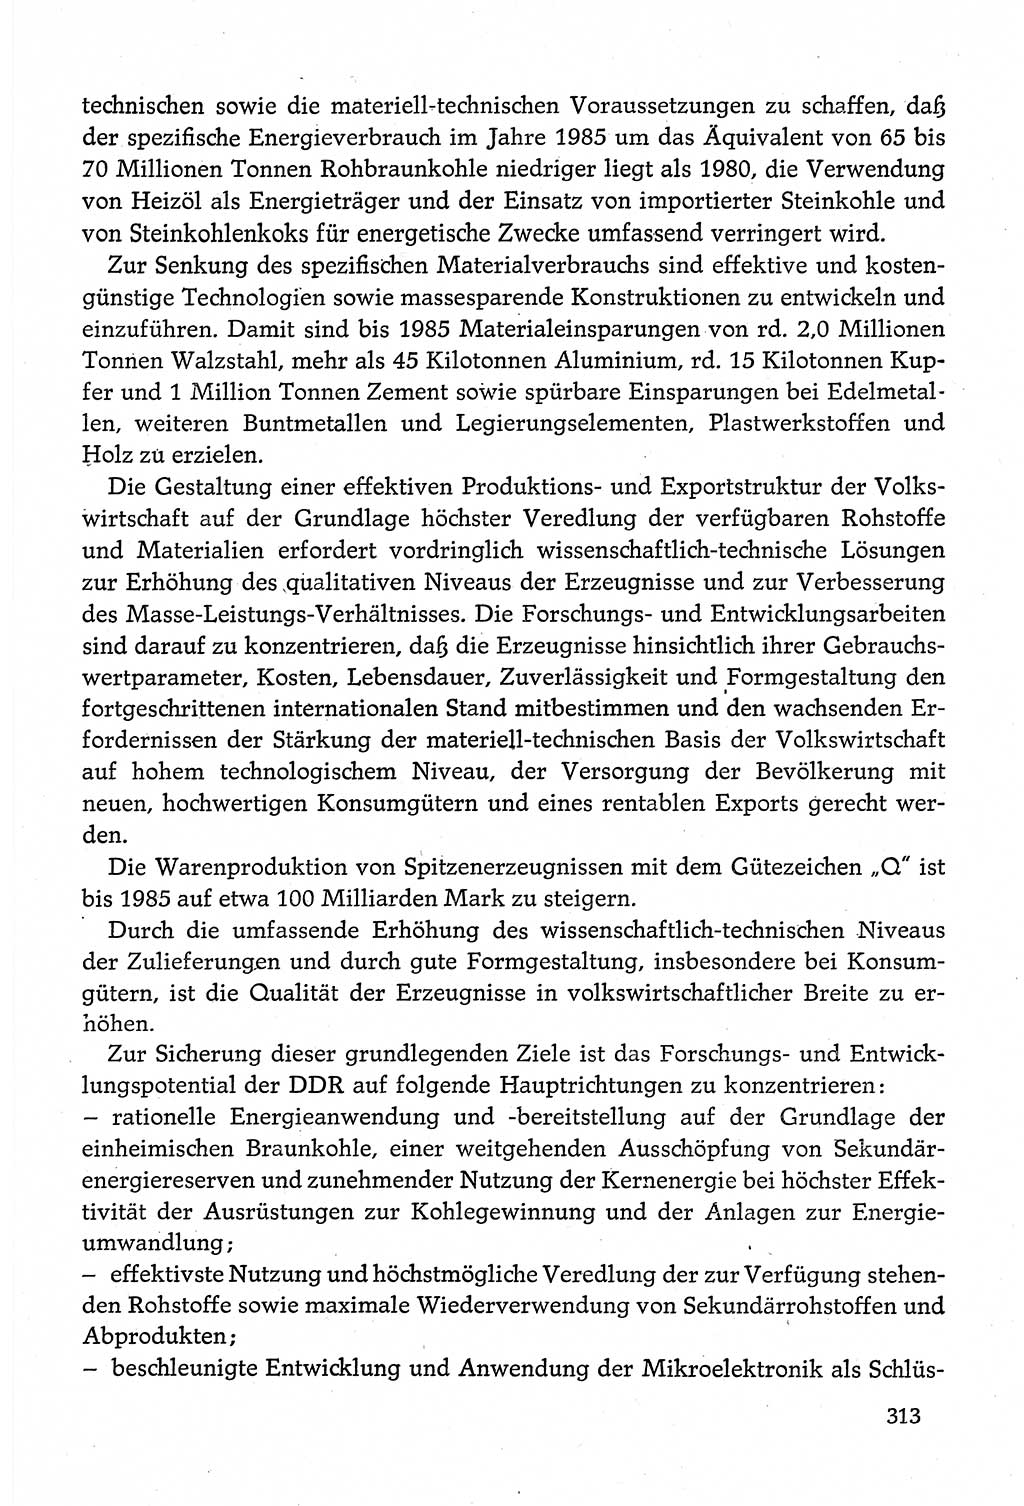 Dokumente der Sozialistischen Einheitspartei Deutschlands (SED) [Deutsche Demokratische Republik (DDR)] 1980-1981, Seite 313 (Dok. SED DDR 1980-1981, S. 313)